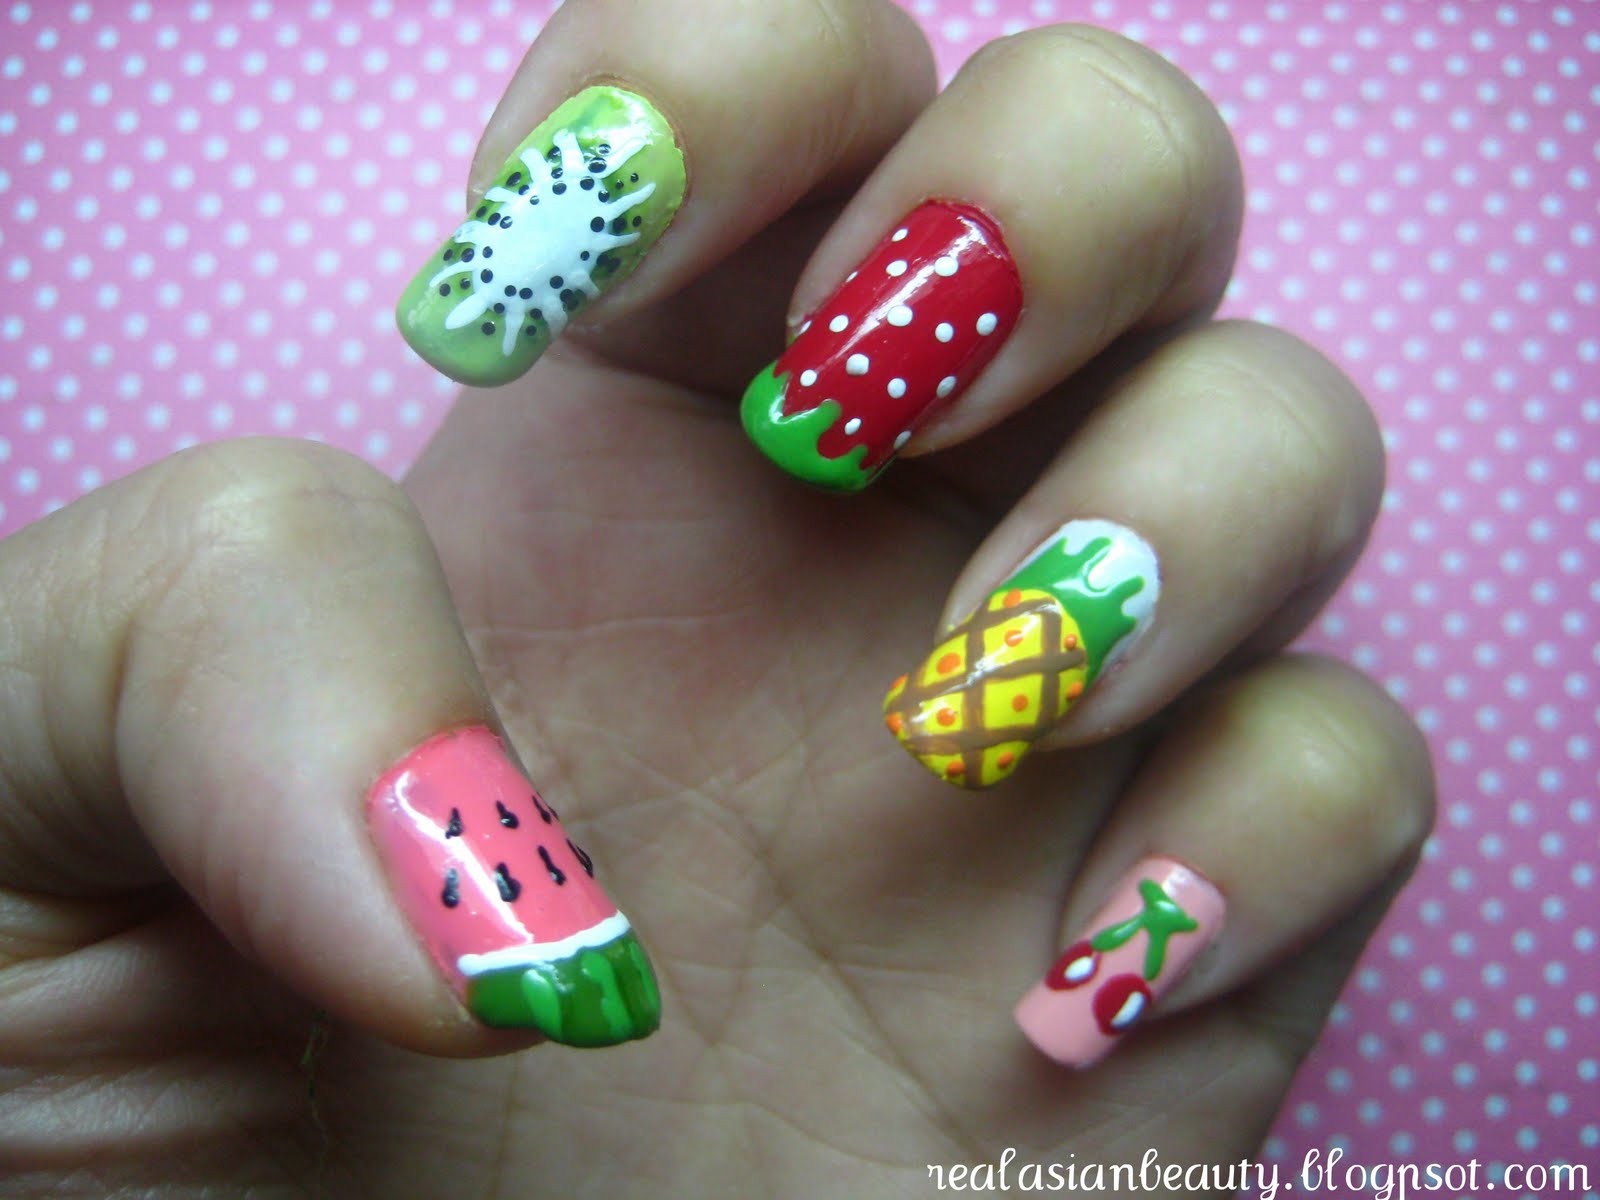 Fruit Nail Art Designs